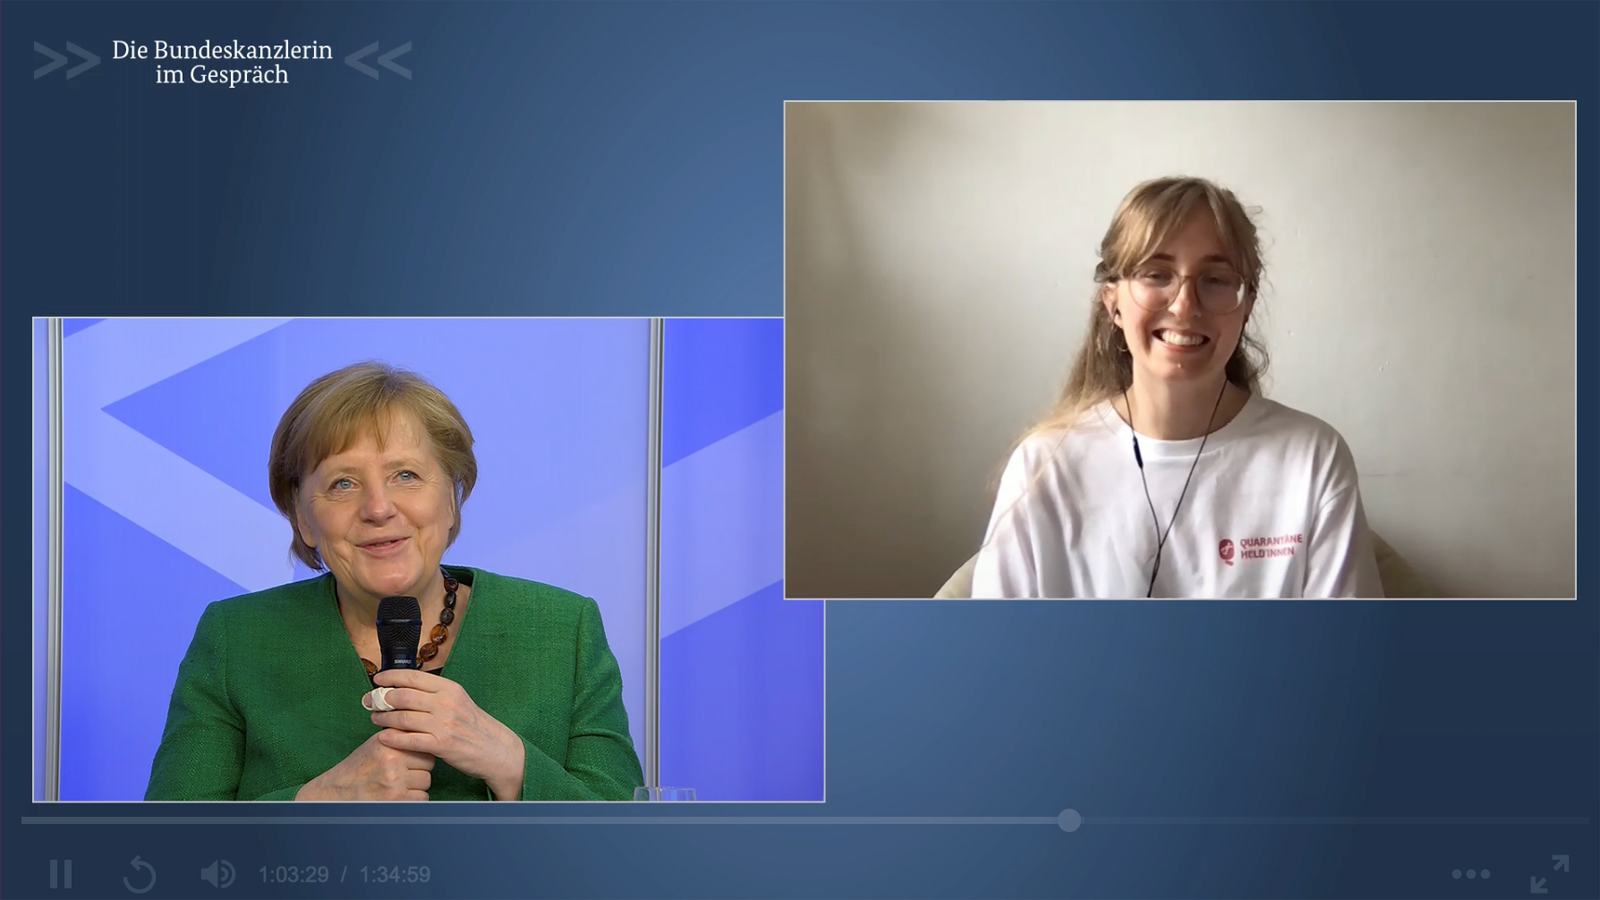 Die Bundeskanzlerin im Gespräch mit Milena Gaede per Videokonferenz